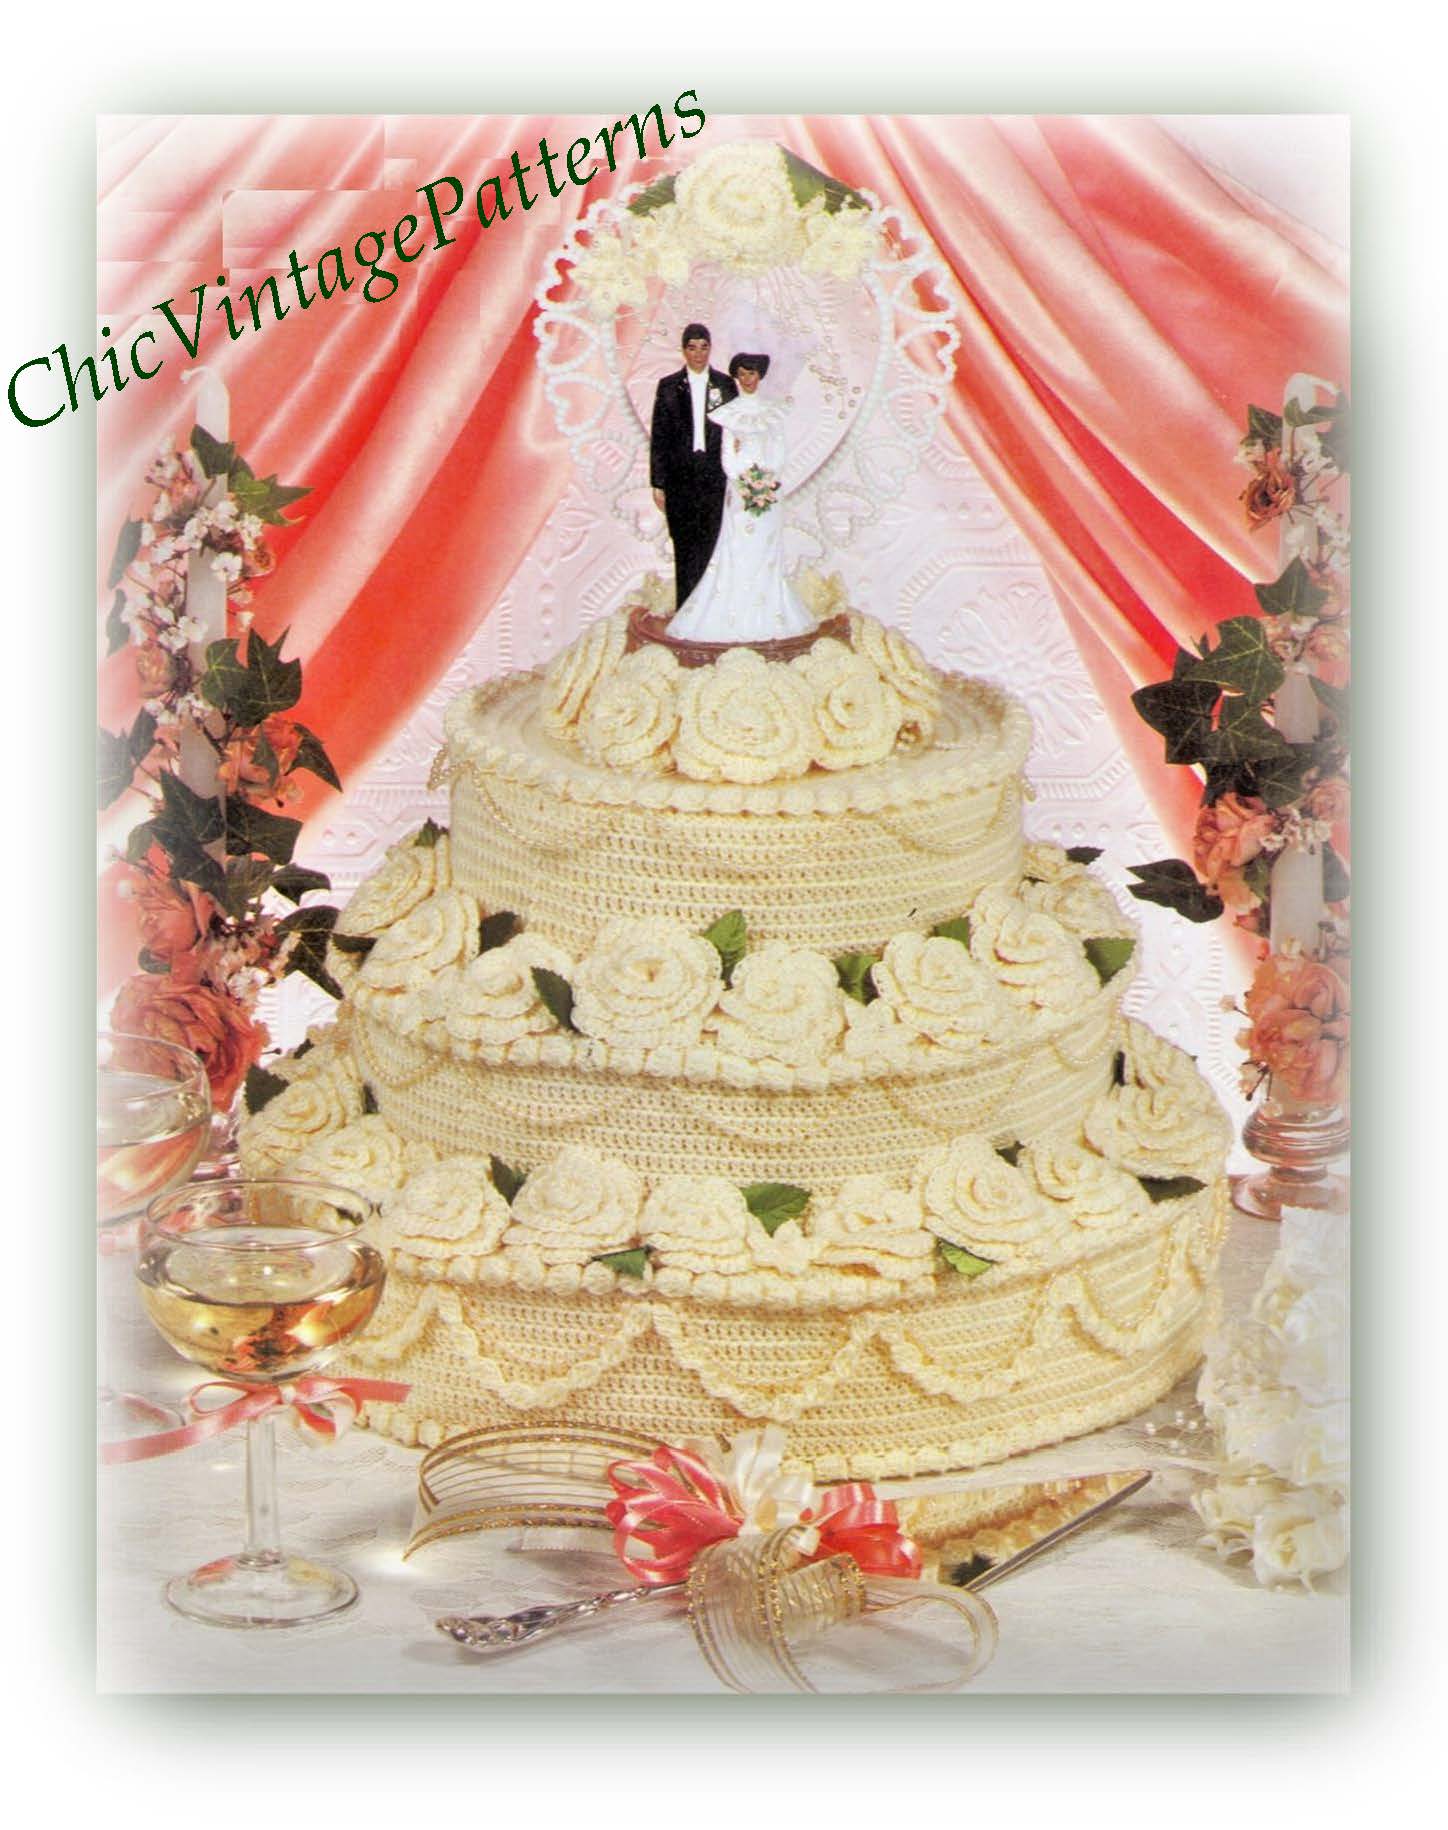 Anniversary Cake Designs| Wedding Anniversary Cake Decorating Ideas|  Marriage Anniversary Cake - YouTube